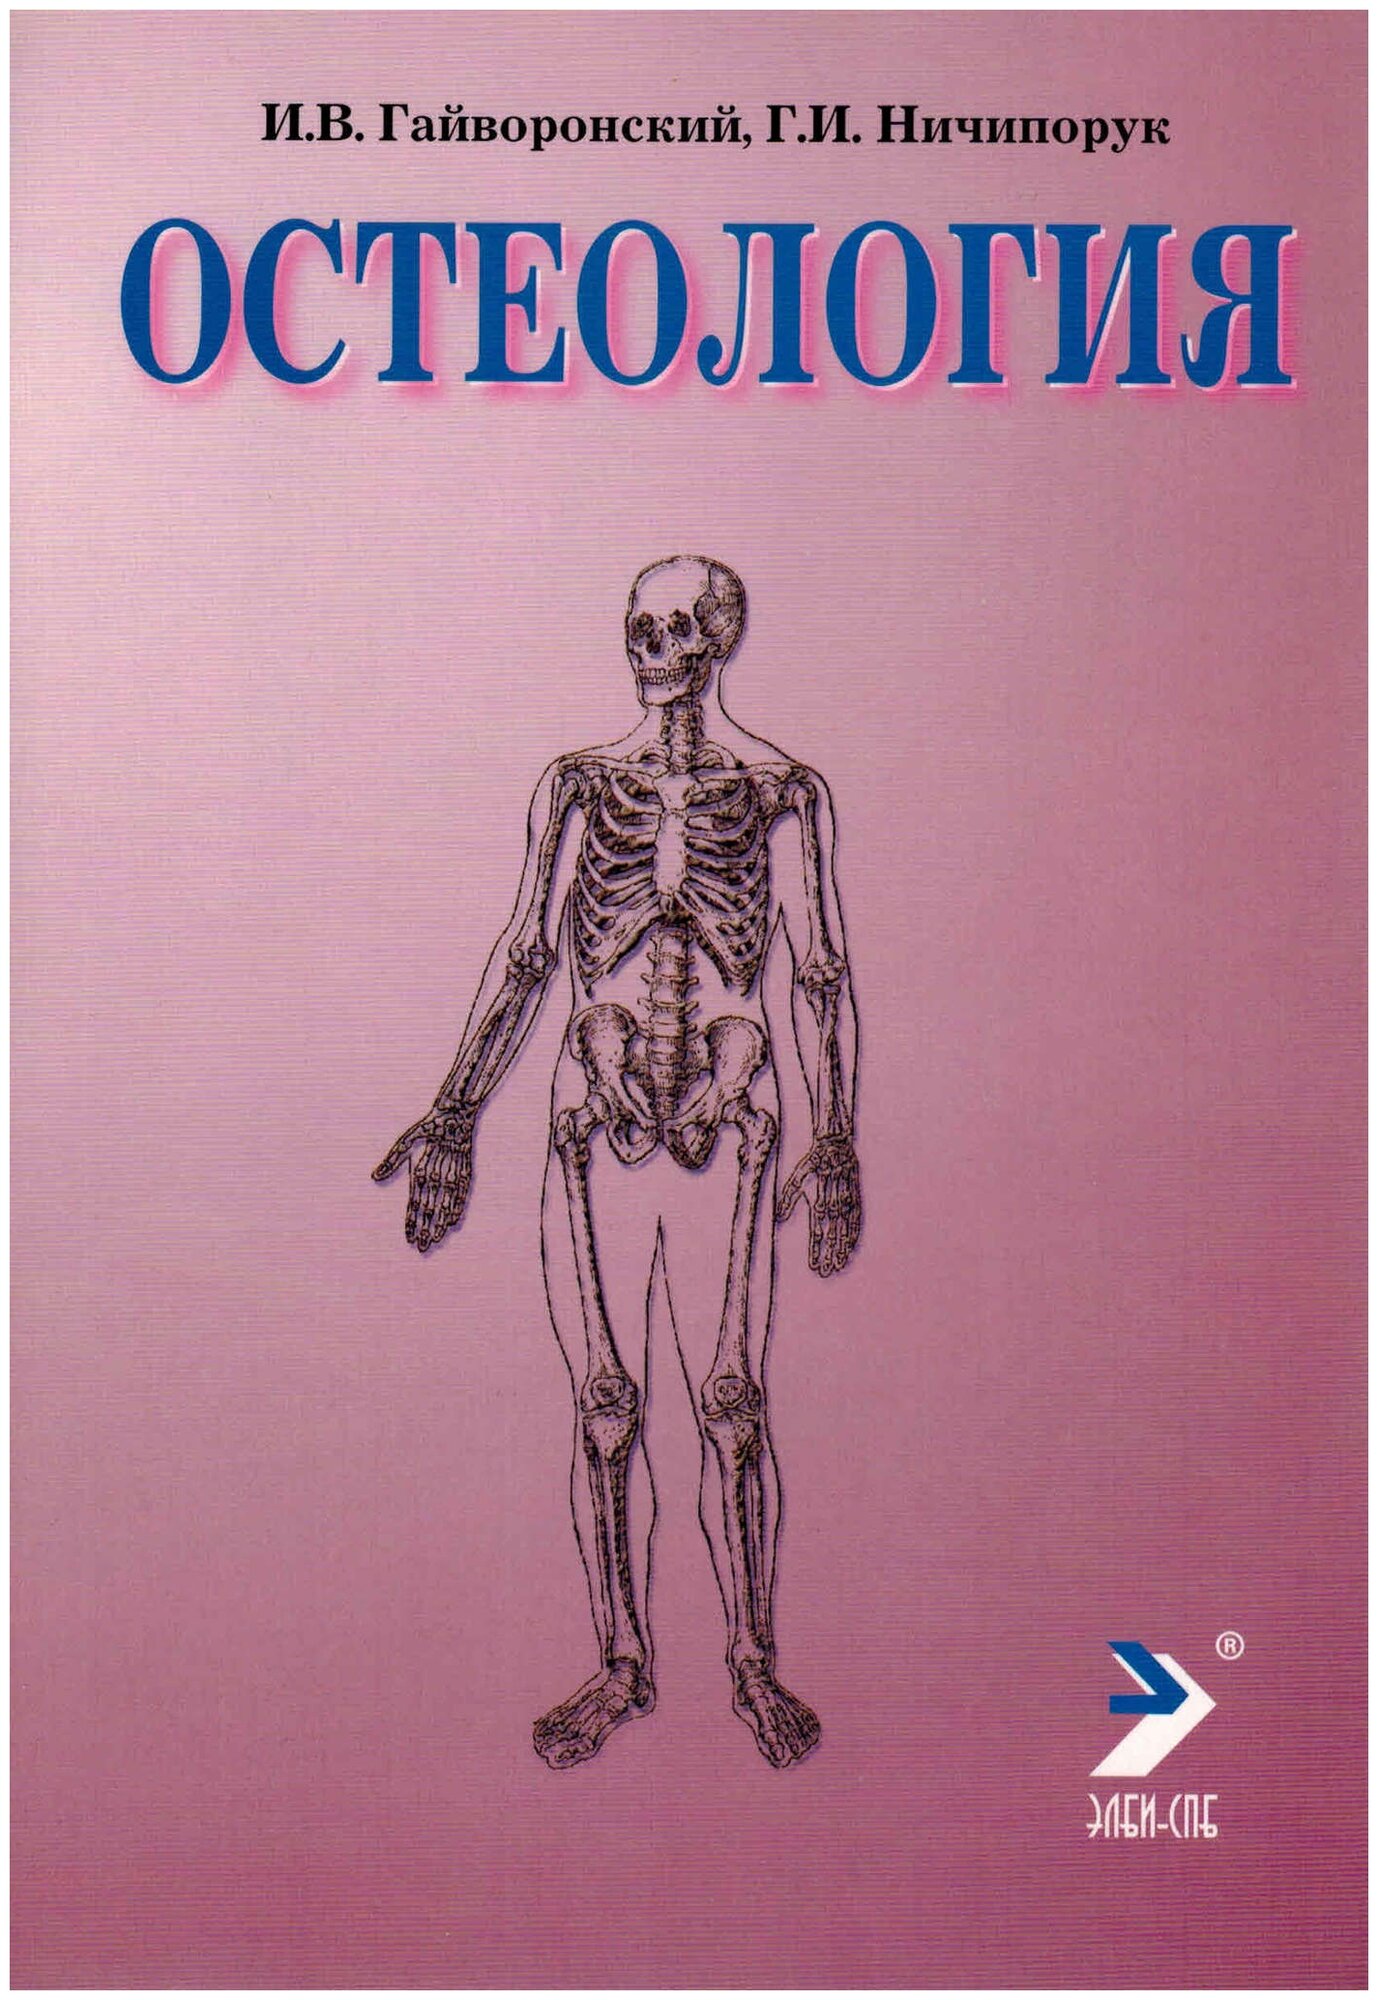 Гайворонский И.В. Ничипорук Г.И. "Остеология: Учебное пособие. 13-е изд."